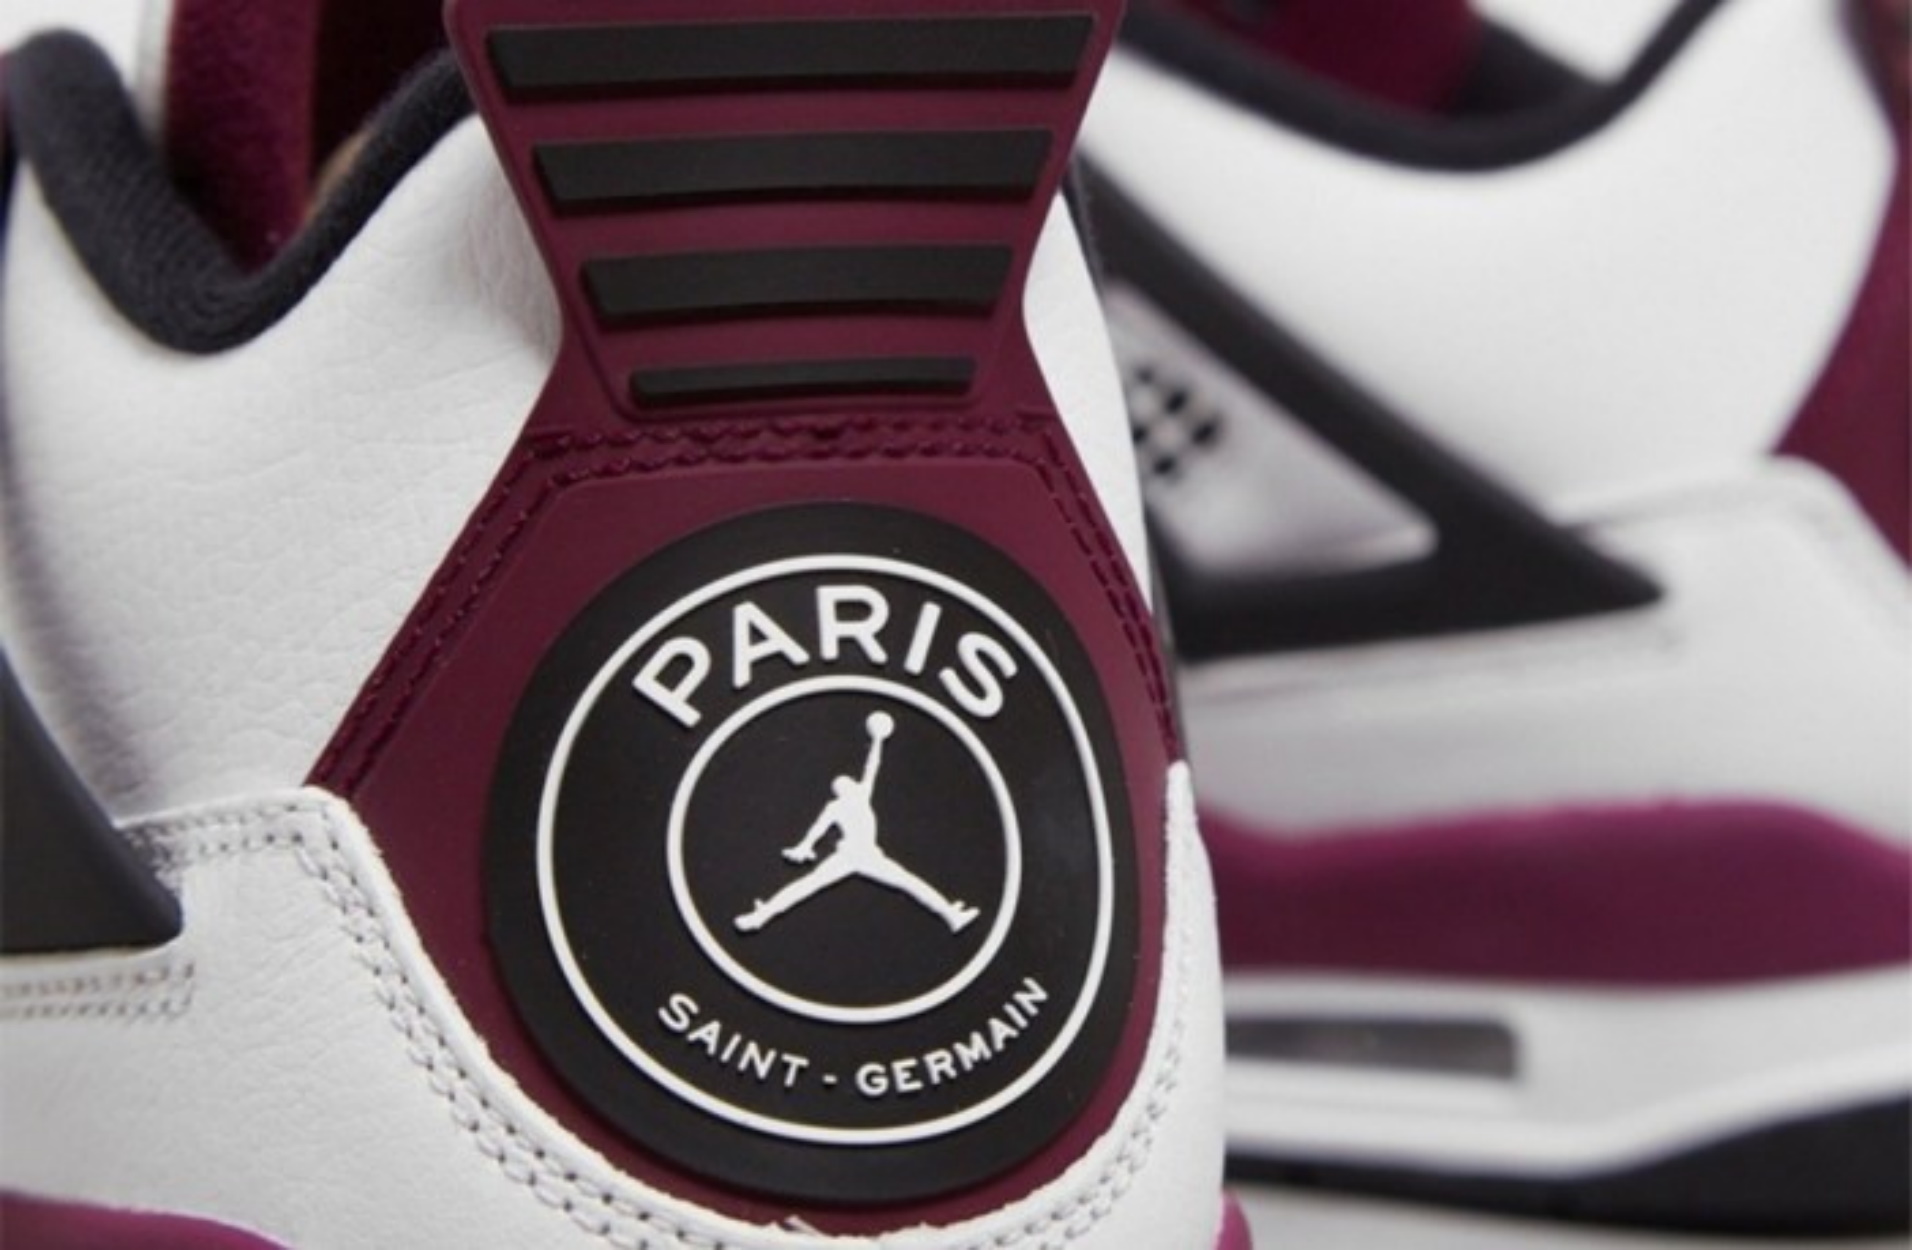 Δείτε το νέο sneaker από την συνεργασία της Jordan με την Παρί Σεν Ζερμέν